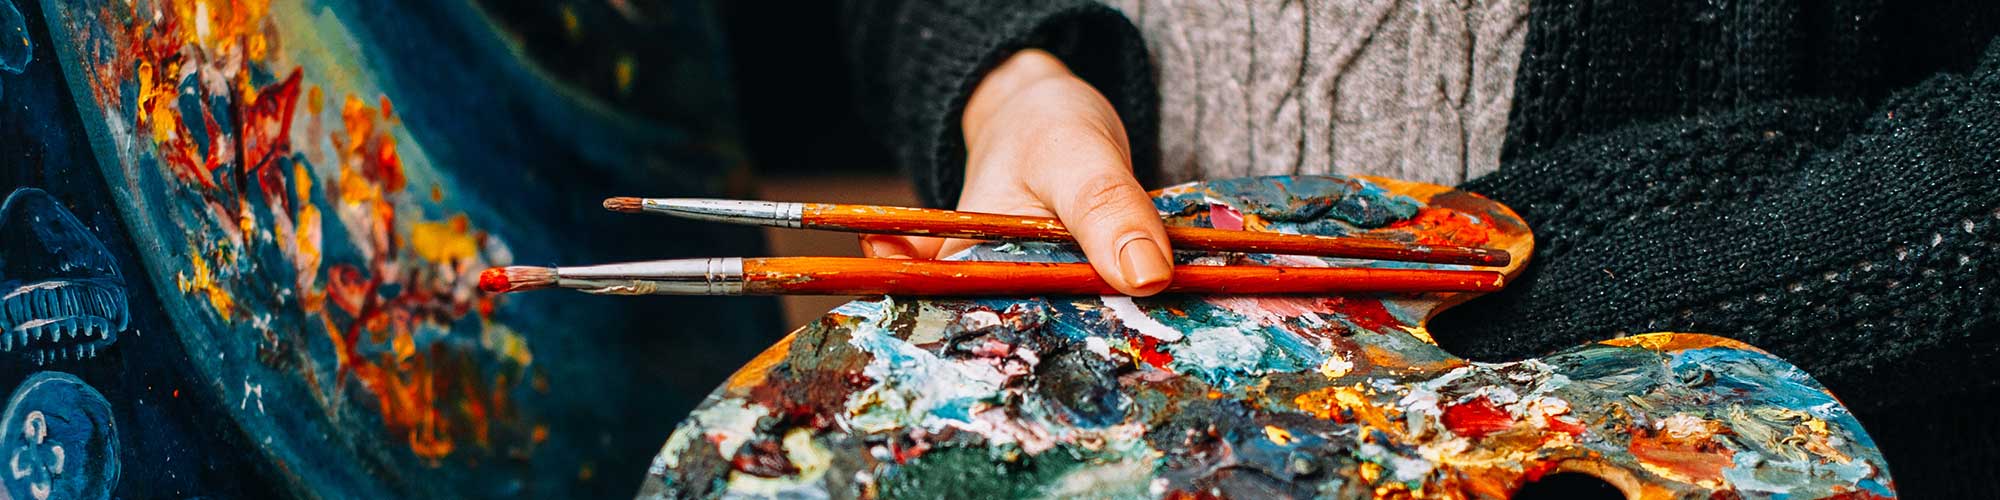 Malerin hält bunte Palette und Pinsel über abstraktem Kunstwerk